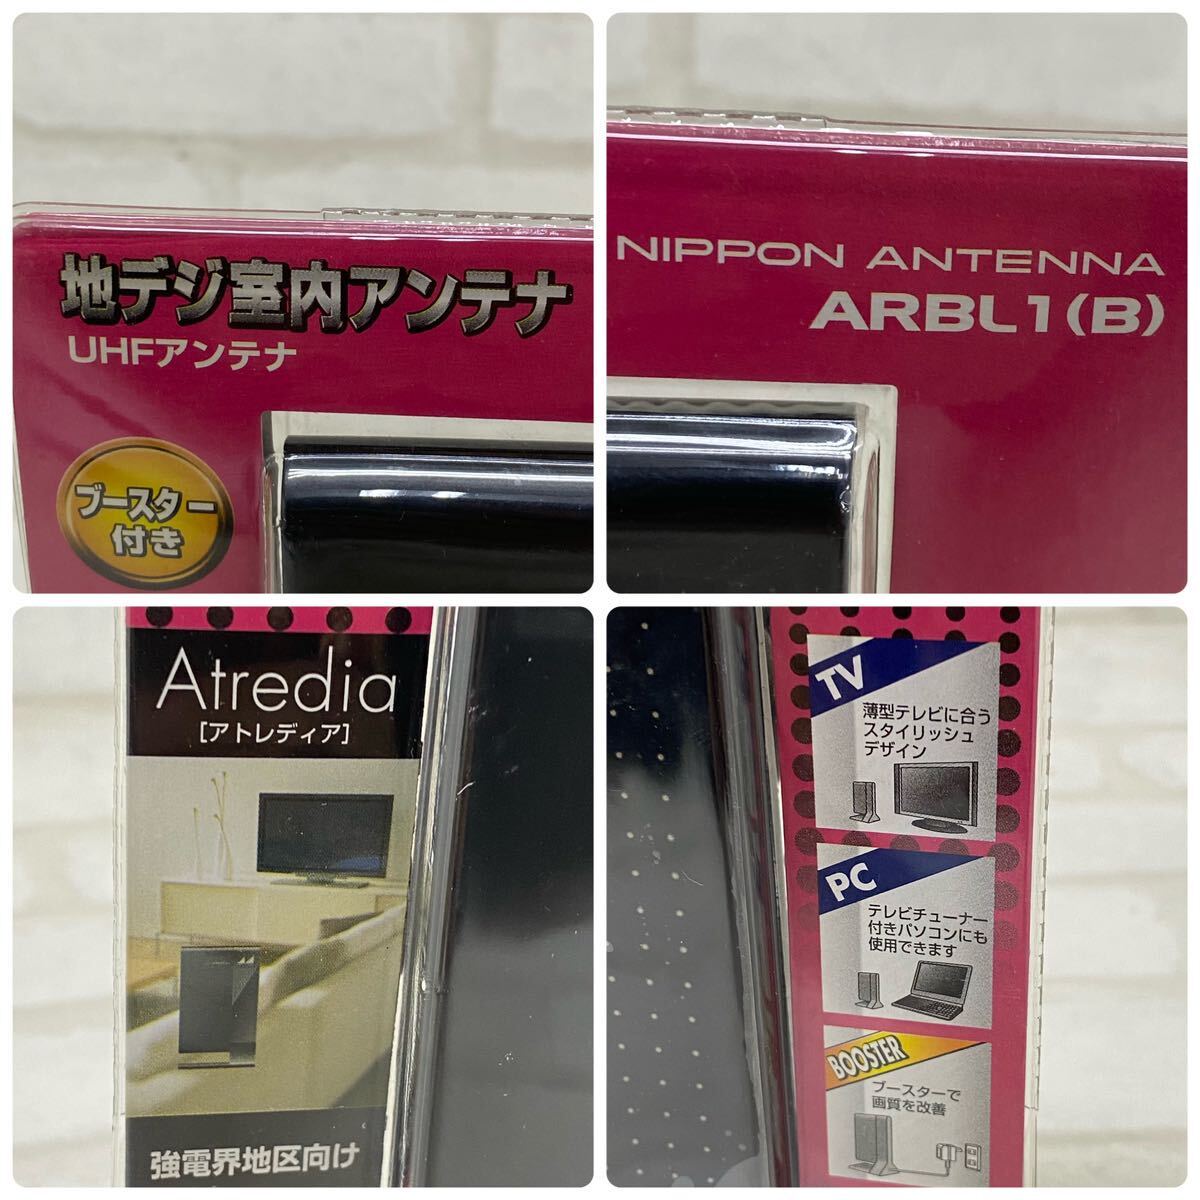 MK■日本アンテナ 地デジ 室内 アンテナ アトレディア ARBL1 UHF ブースター 強電界地区 ACアダプター テレビ PC デジタル 未使用保管品